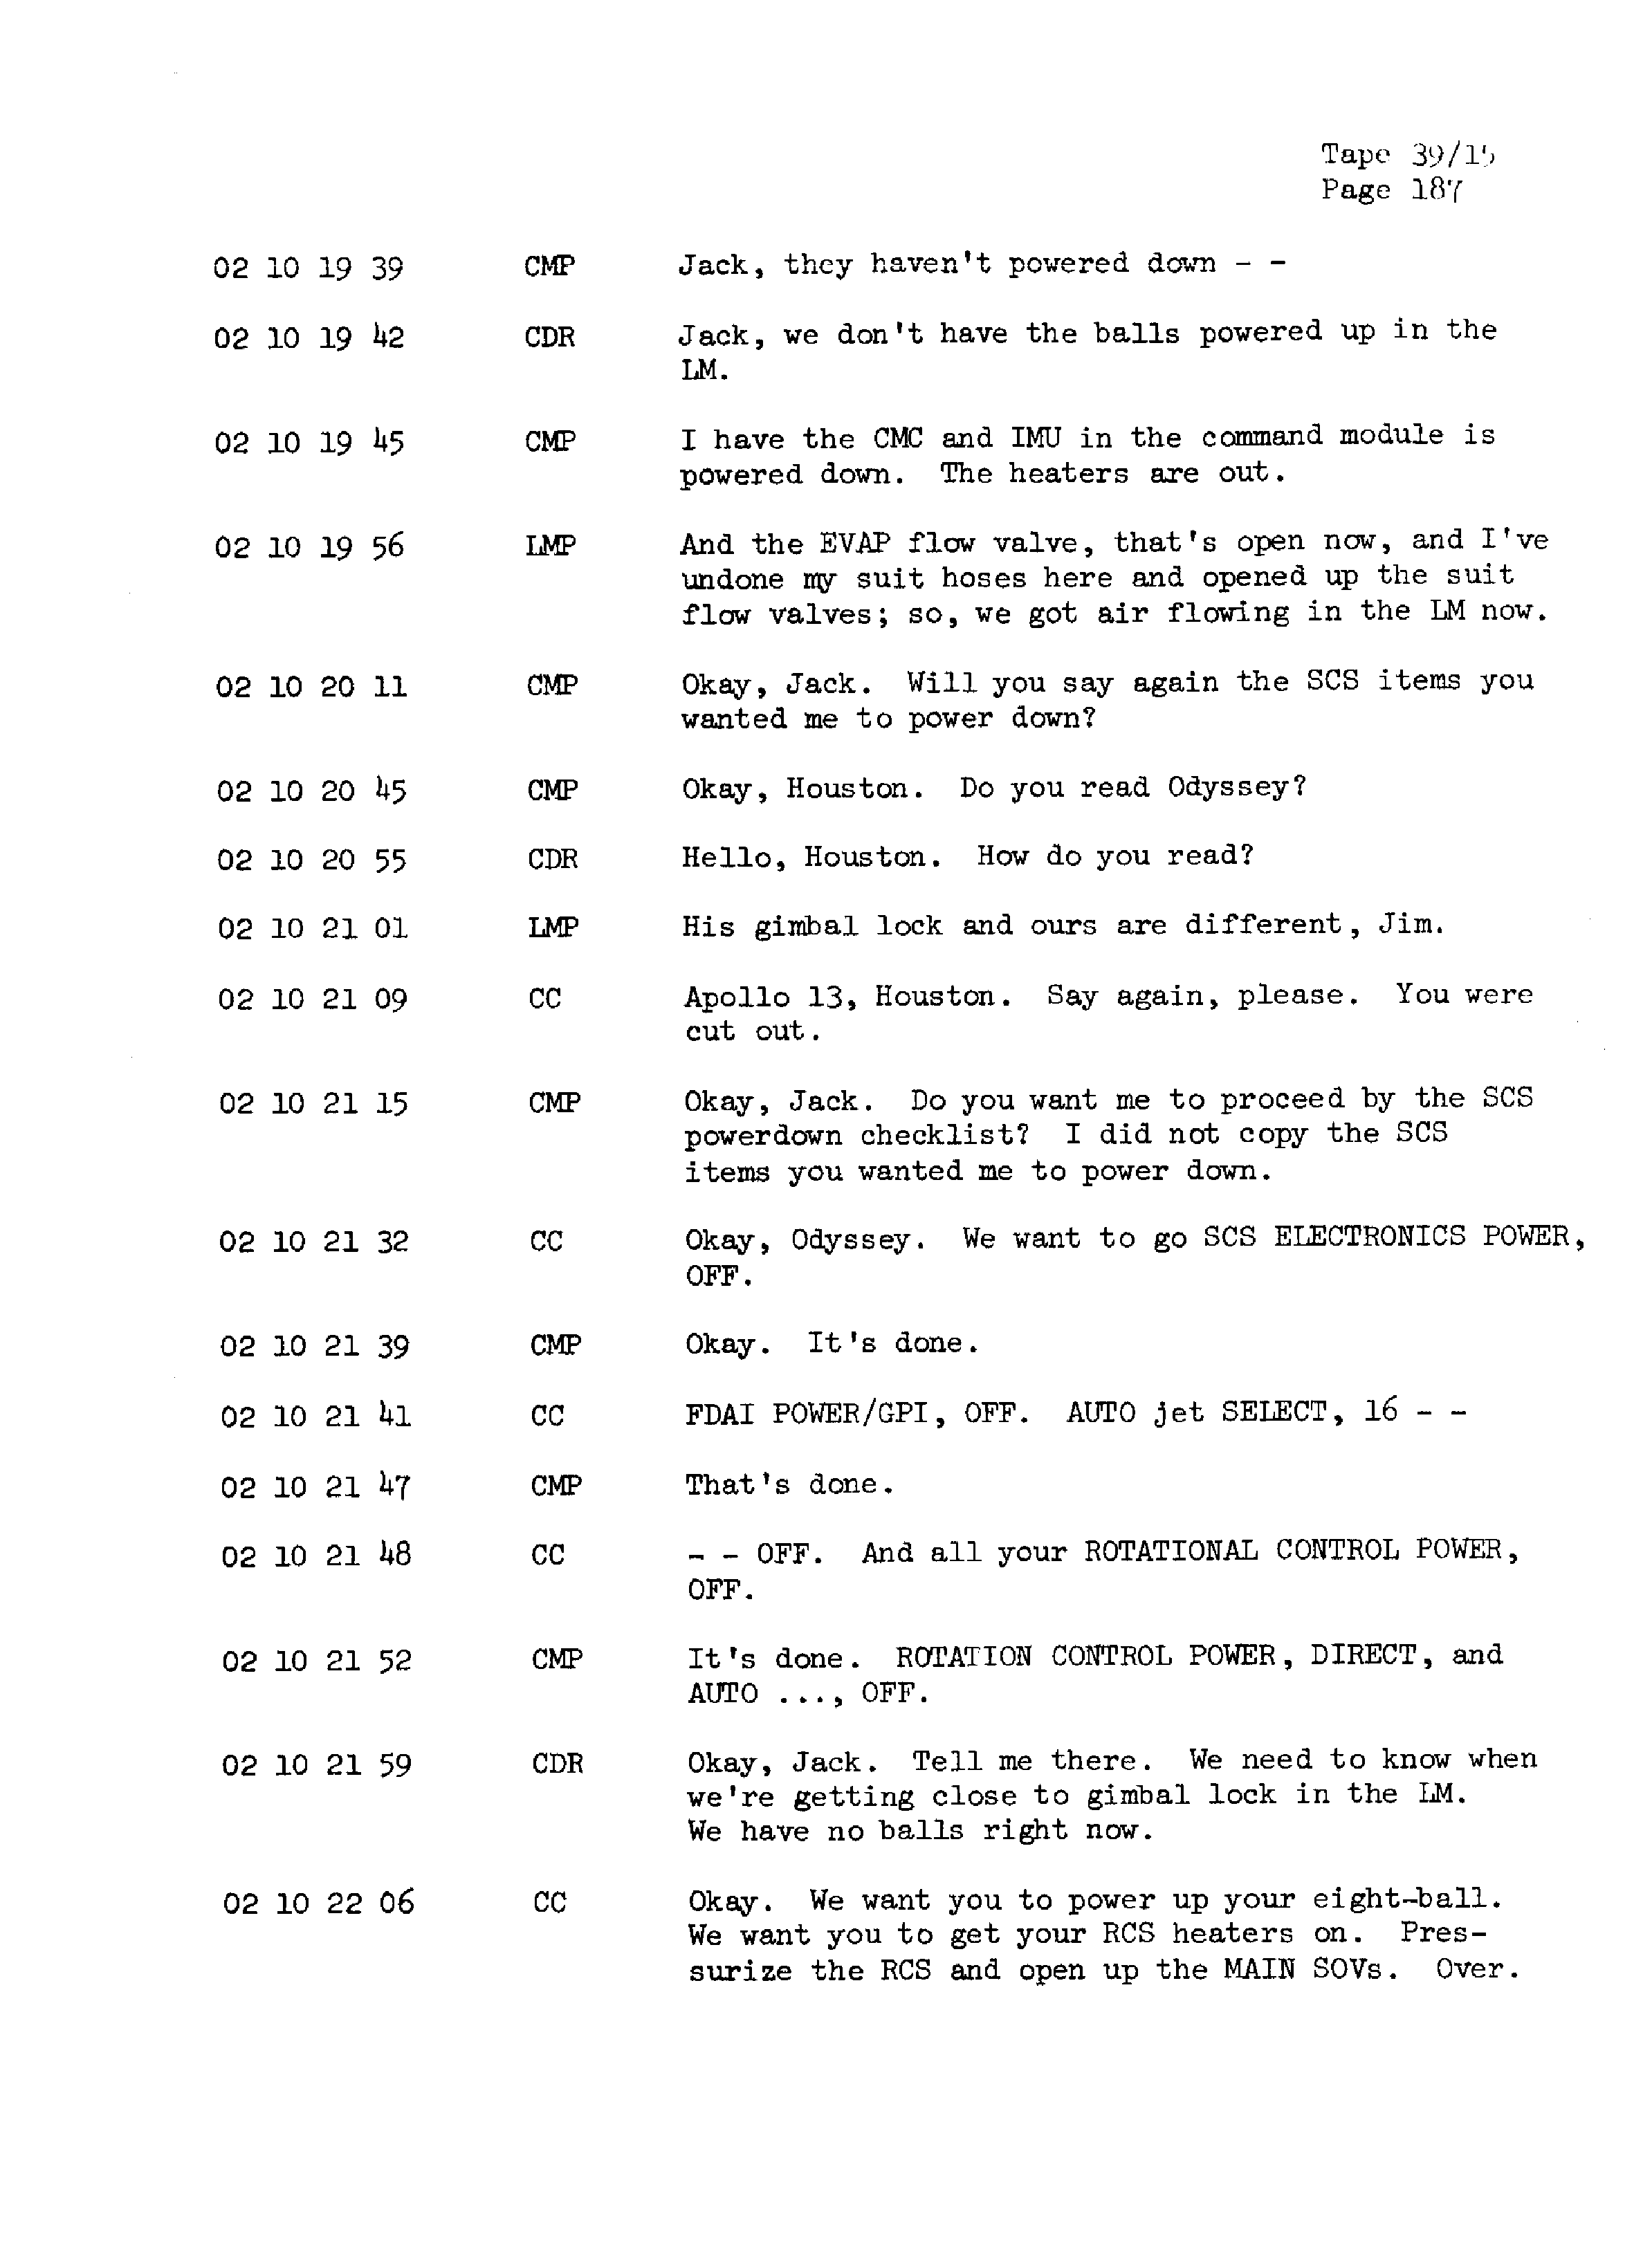 Page 194 of Apollo 13’s original transcript